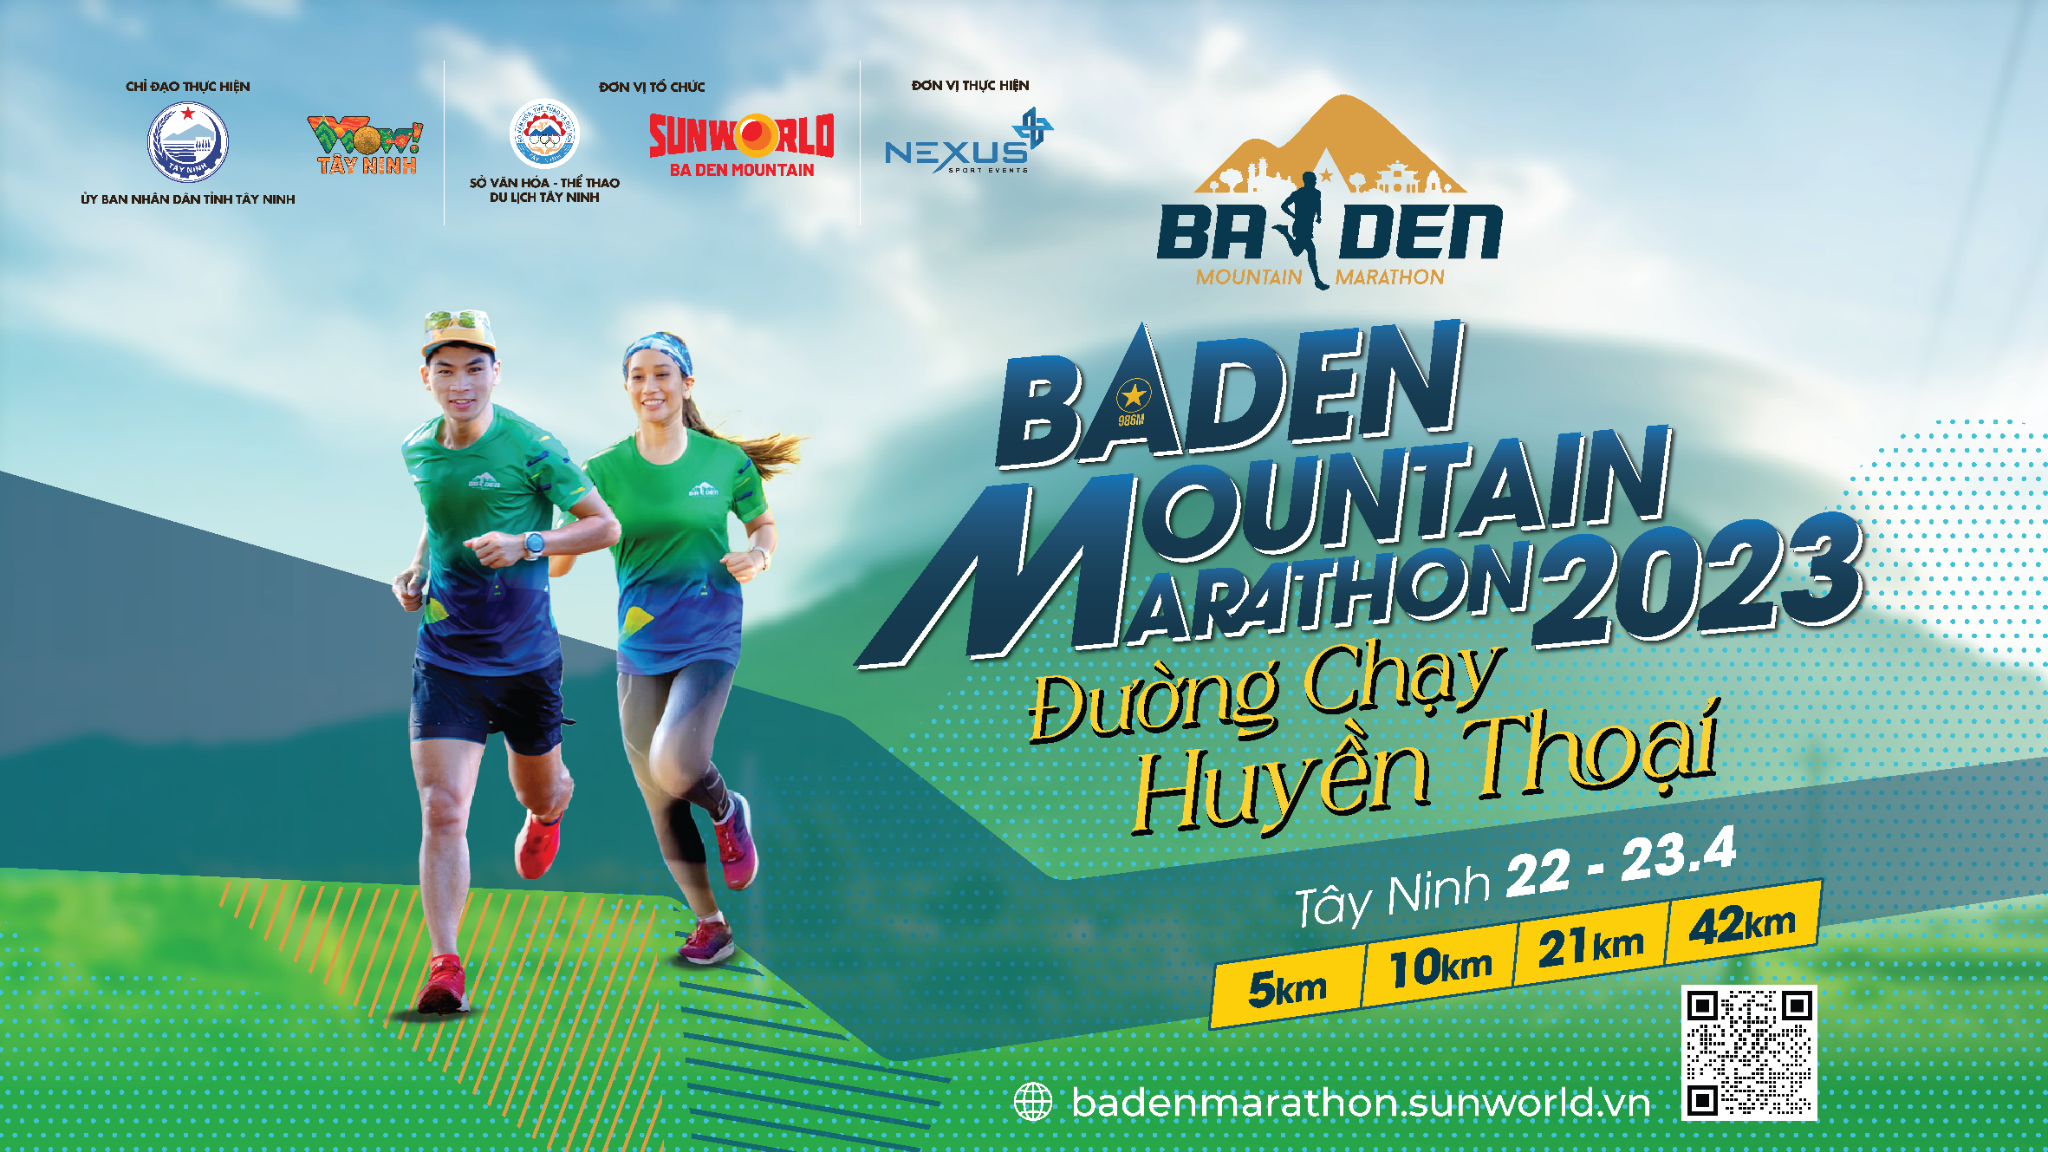 Kinh tế - 5000 VĐV đăng ký chỉ sau 7 ngày mở cổng: Điều gì làm nên sức hấp dẫn của BaDen Mountain Marathon 2023? (Hình 5).